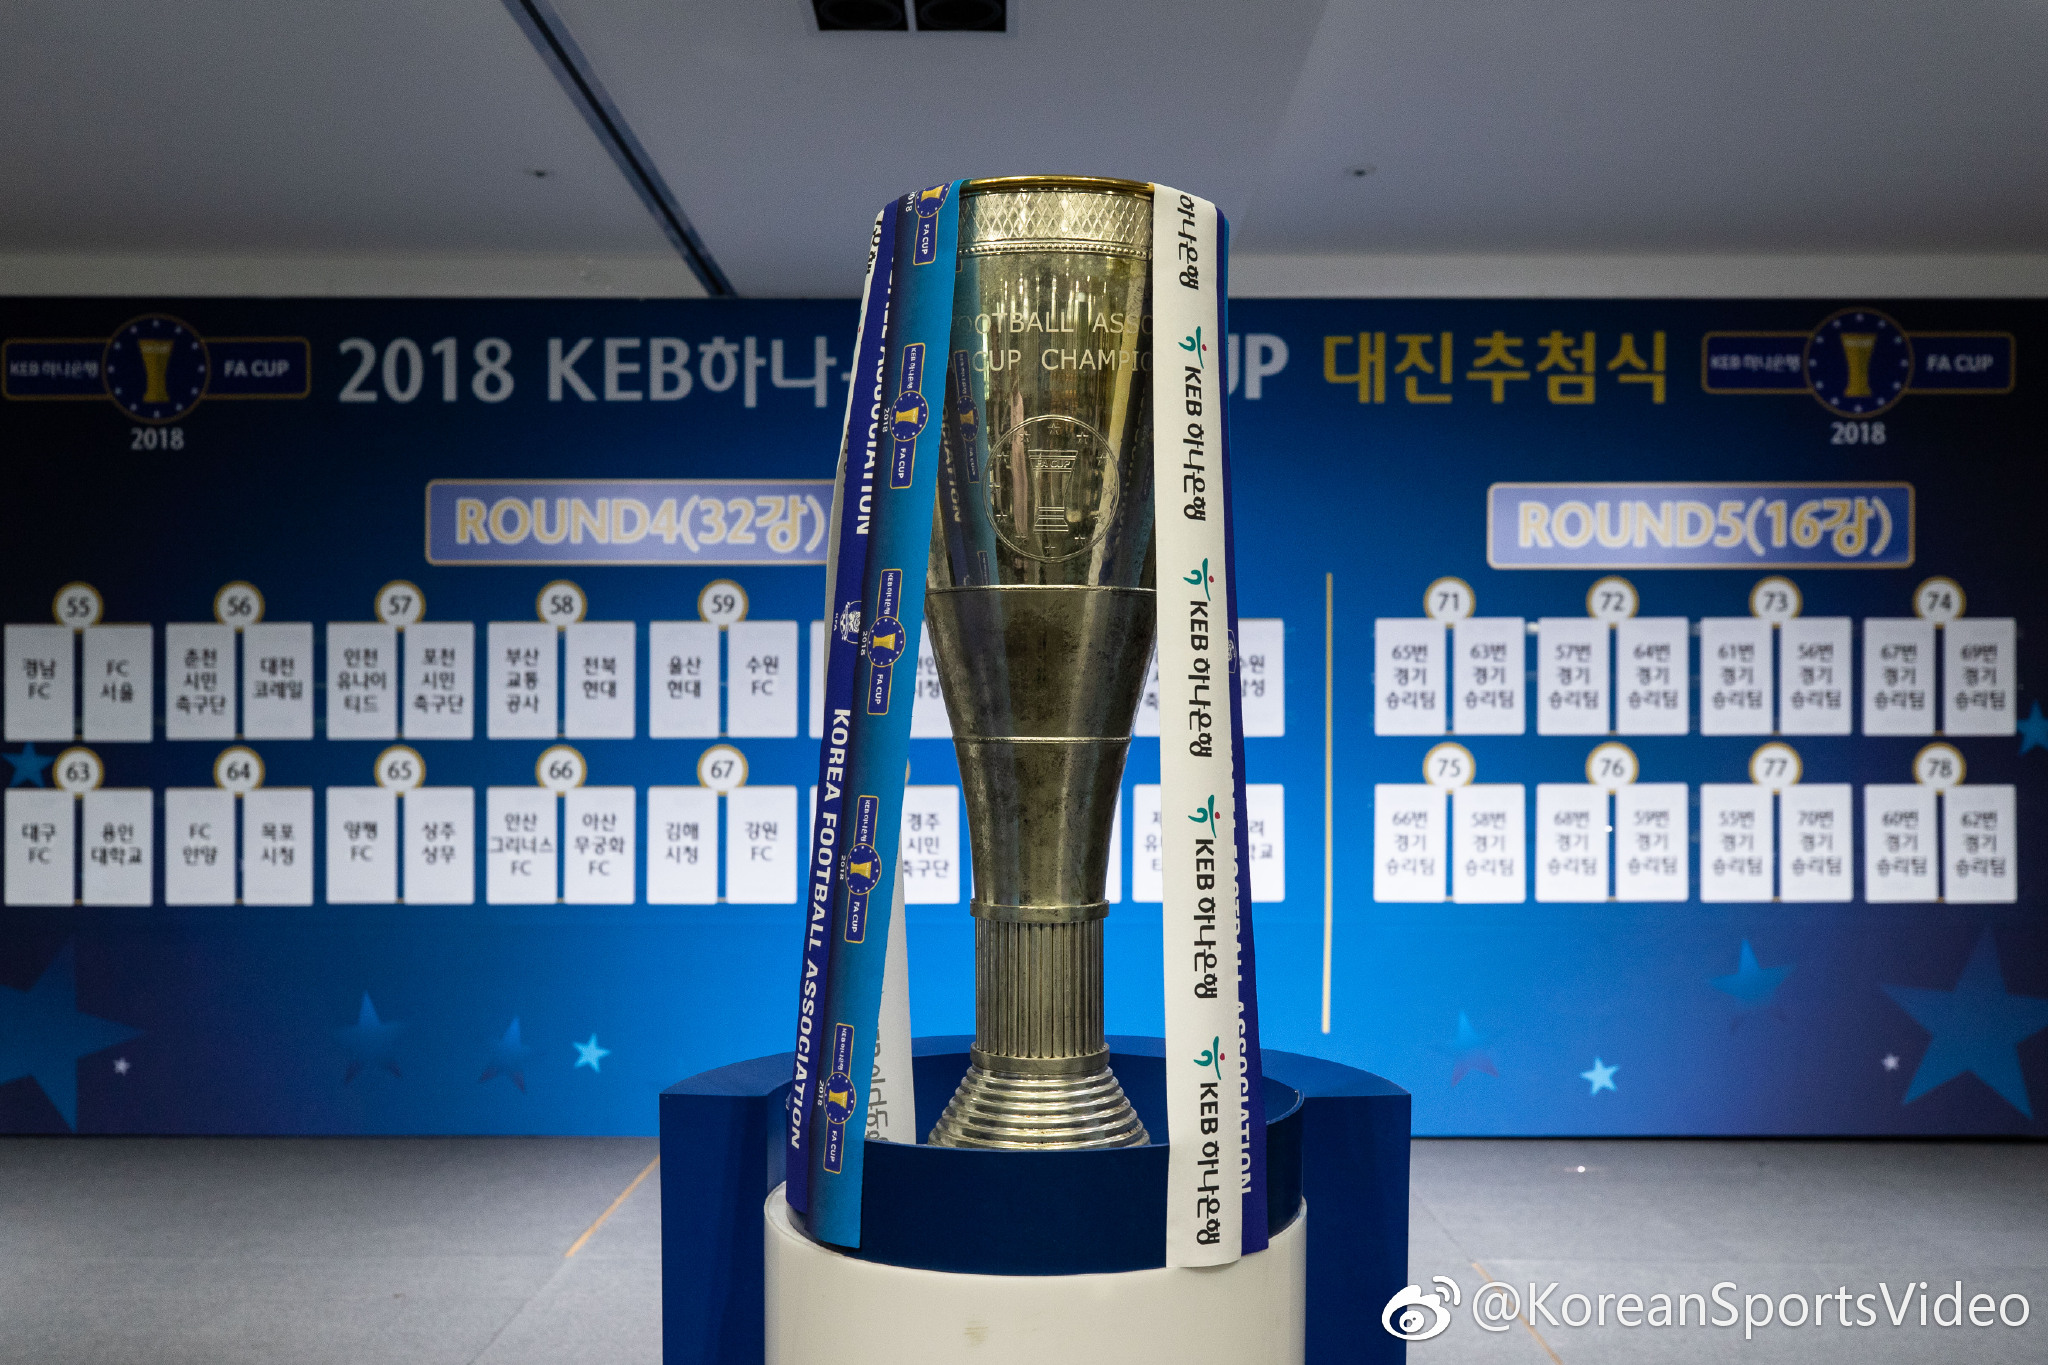 2018韩国足协杯第4轮和第5轮(1\/8决赛)对阵抽